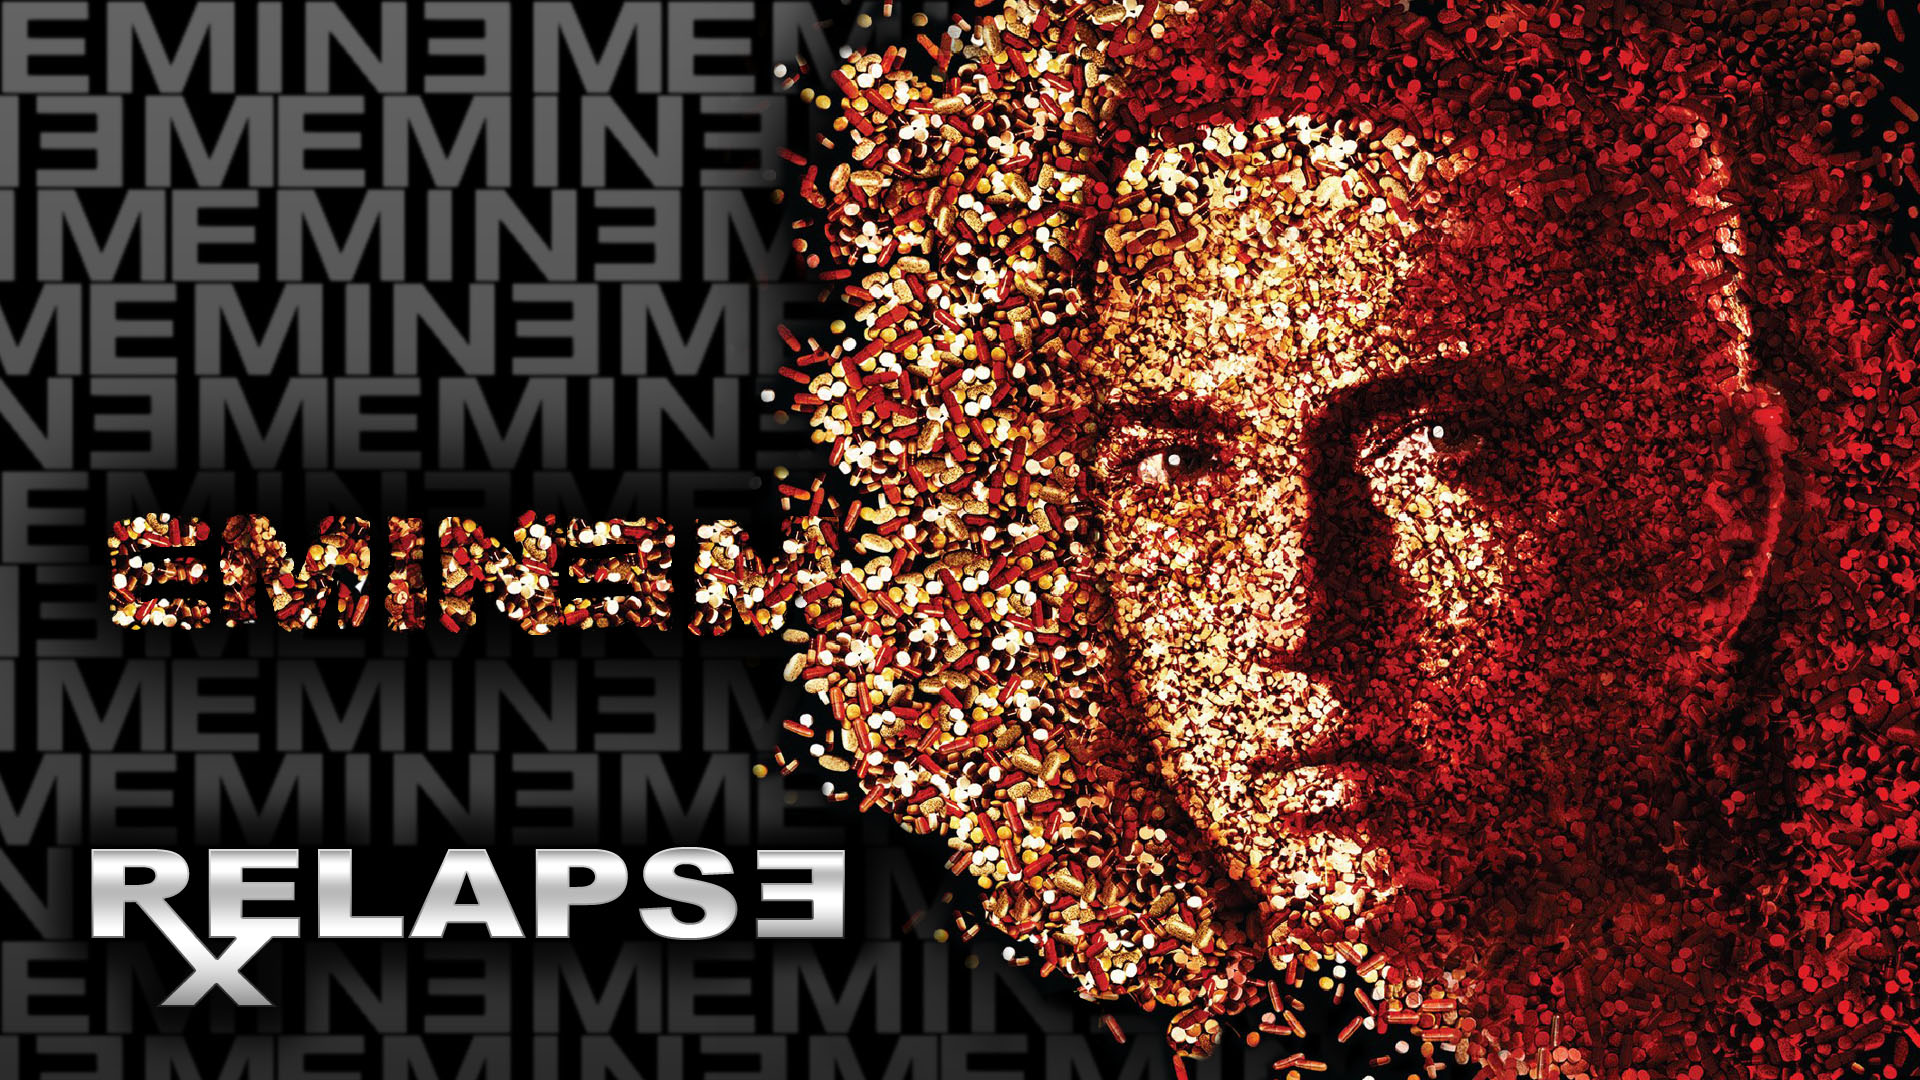 22 Eminem Relapse Wallpaper On Wallpapersafari